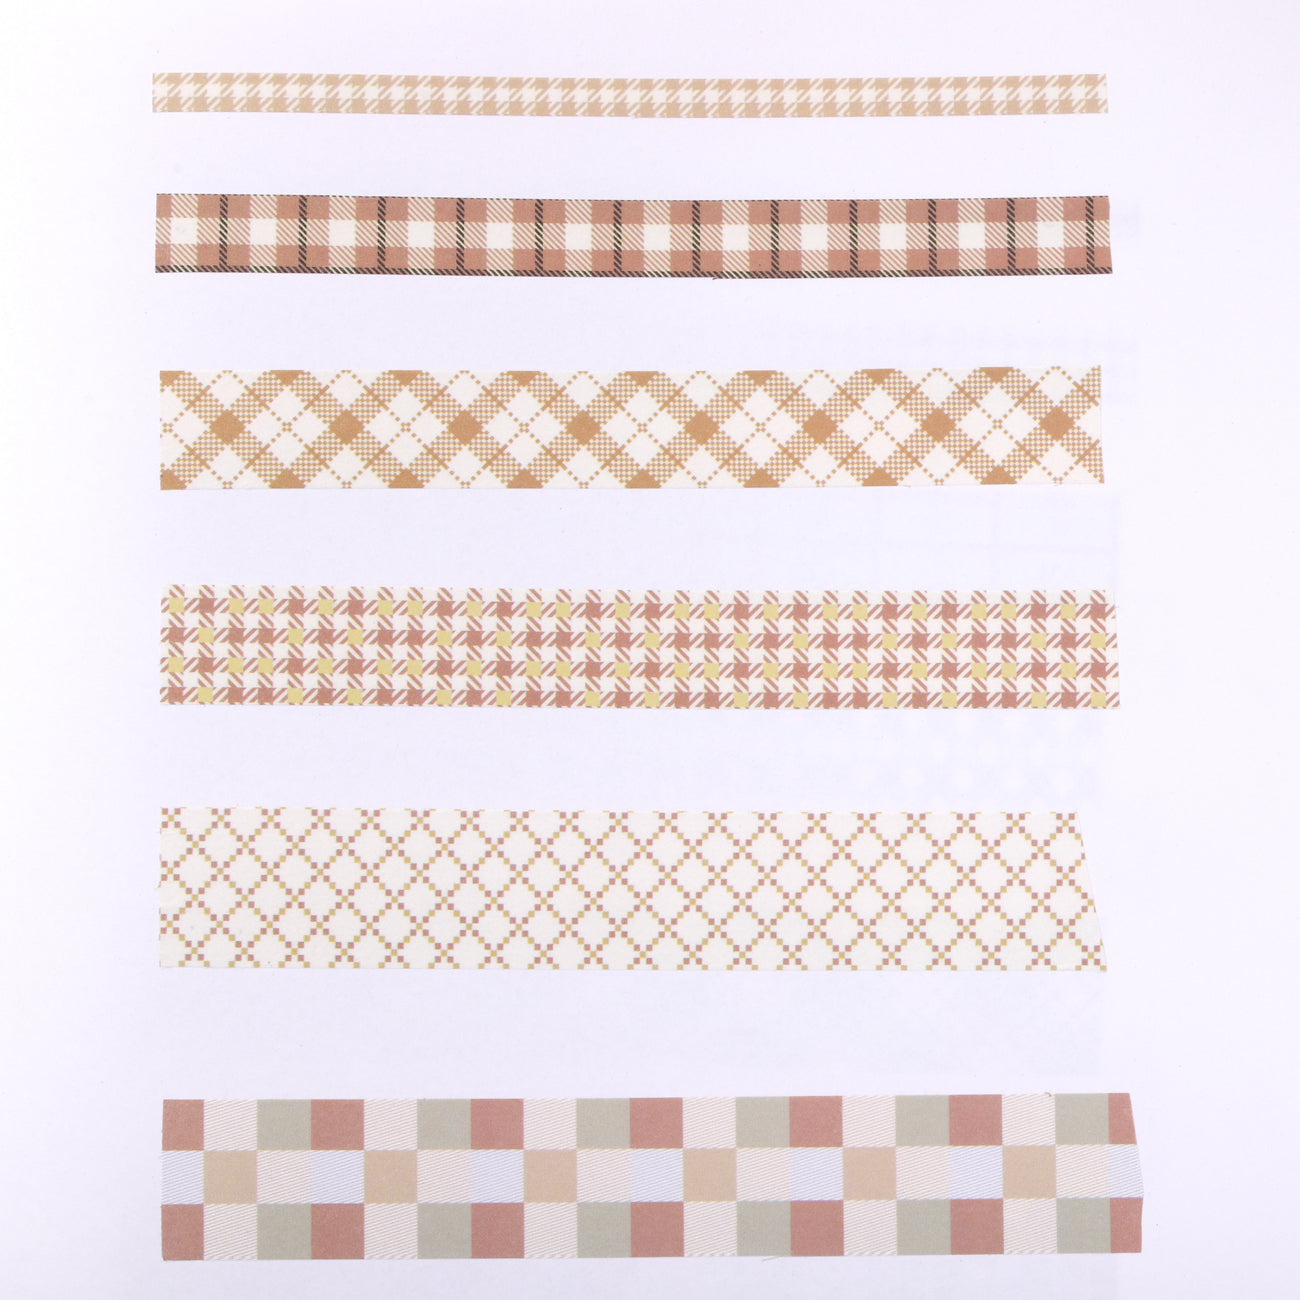 Grid Pattern Washi Tape - Set of 6 - Brown